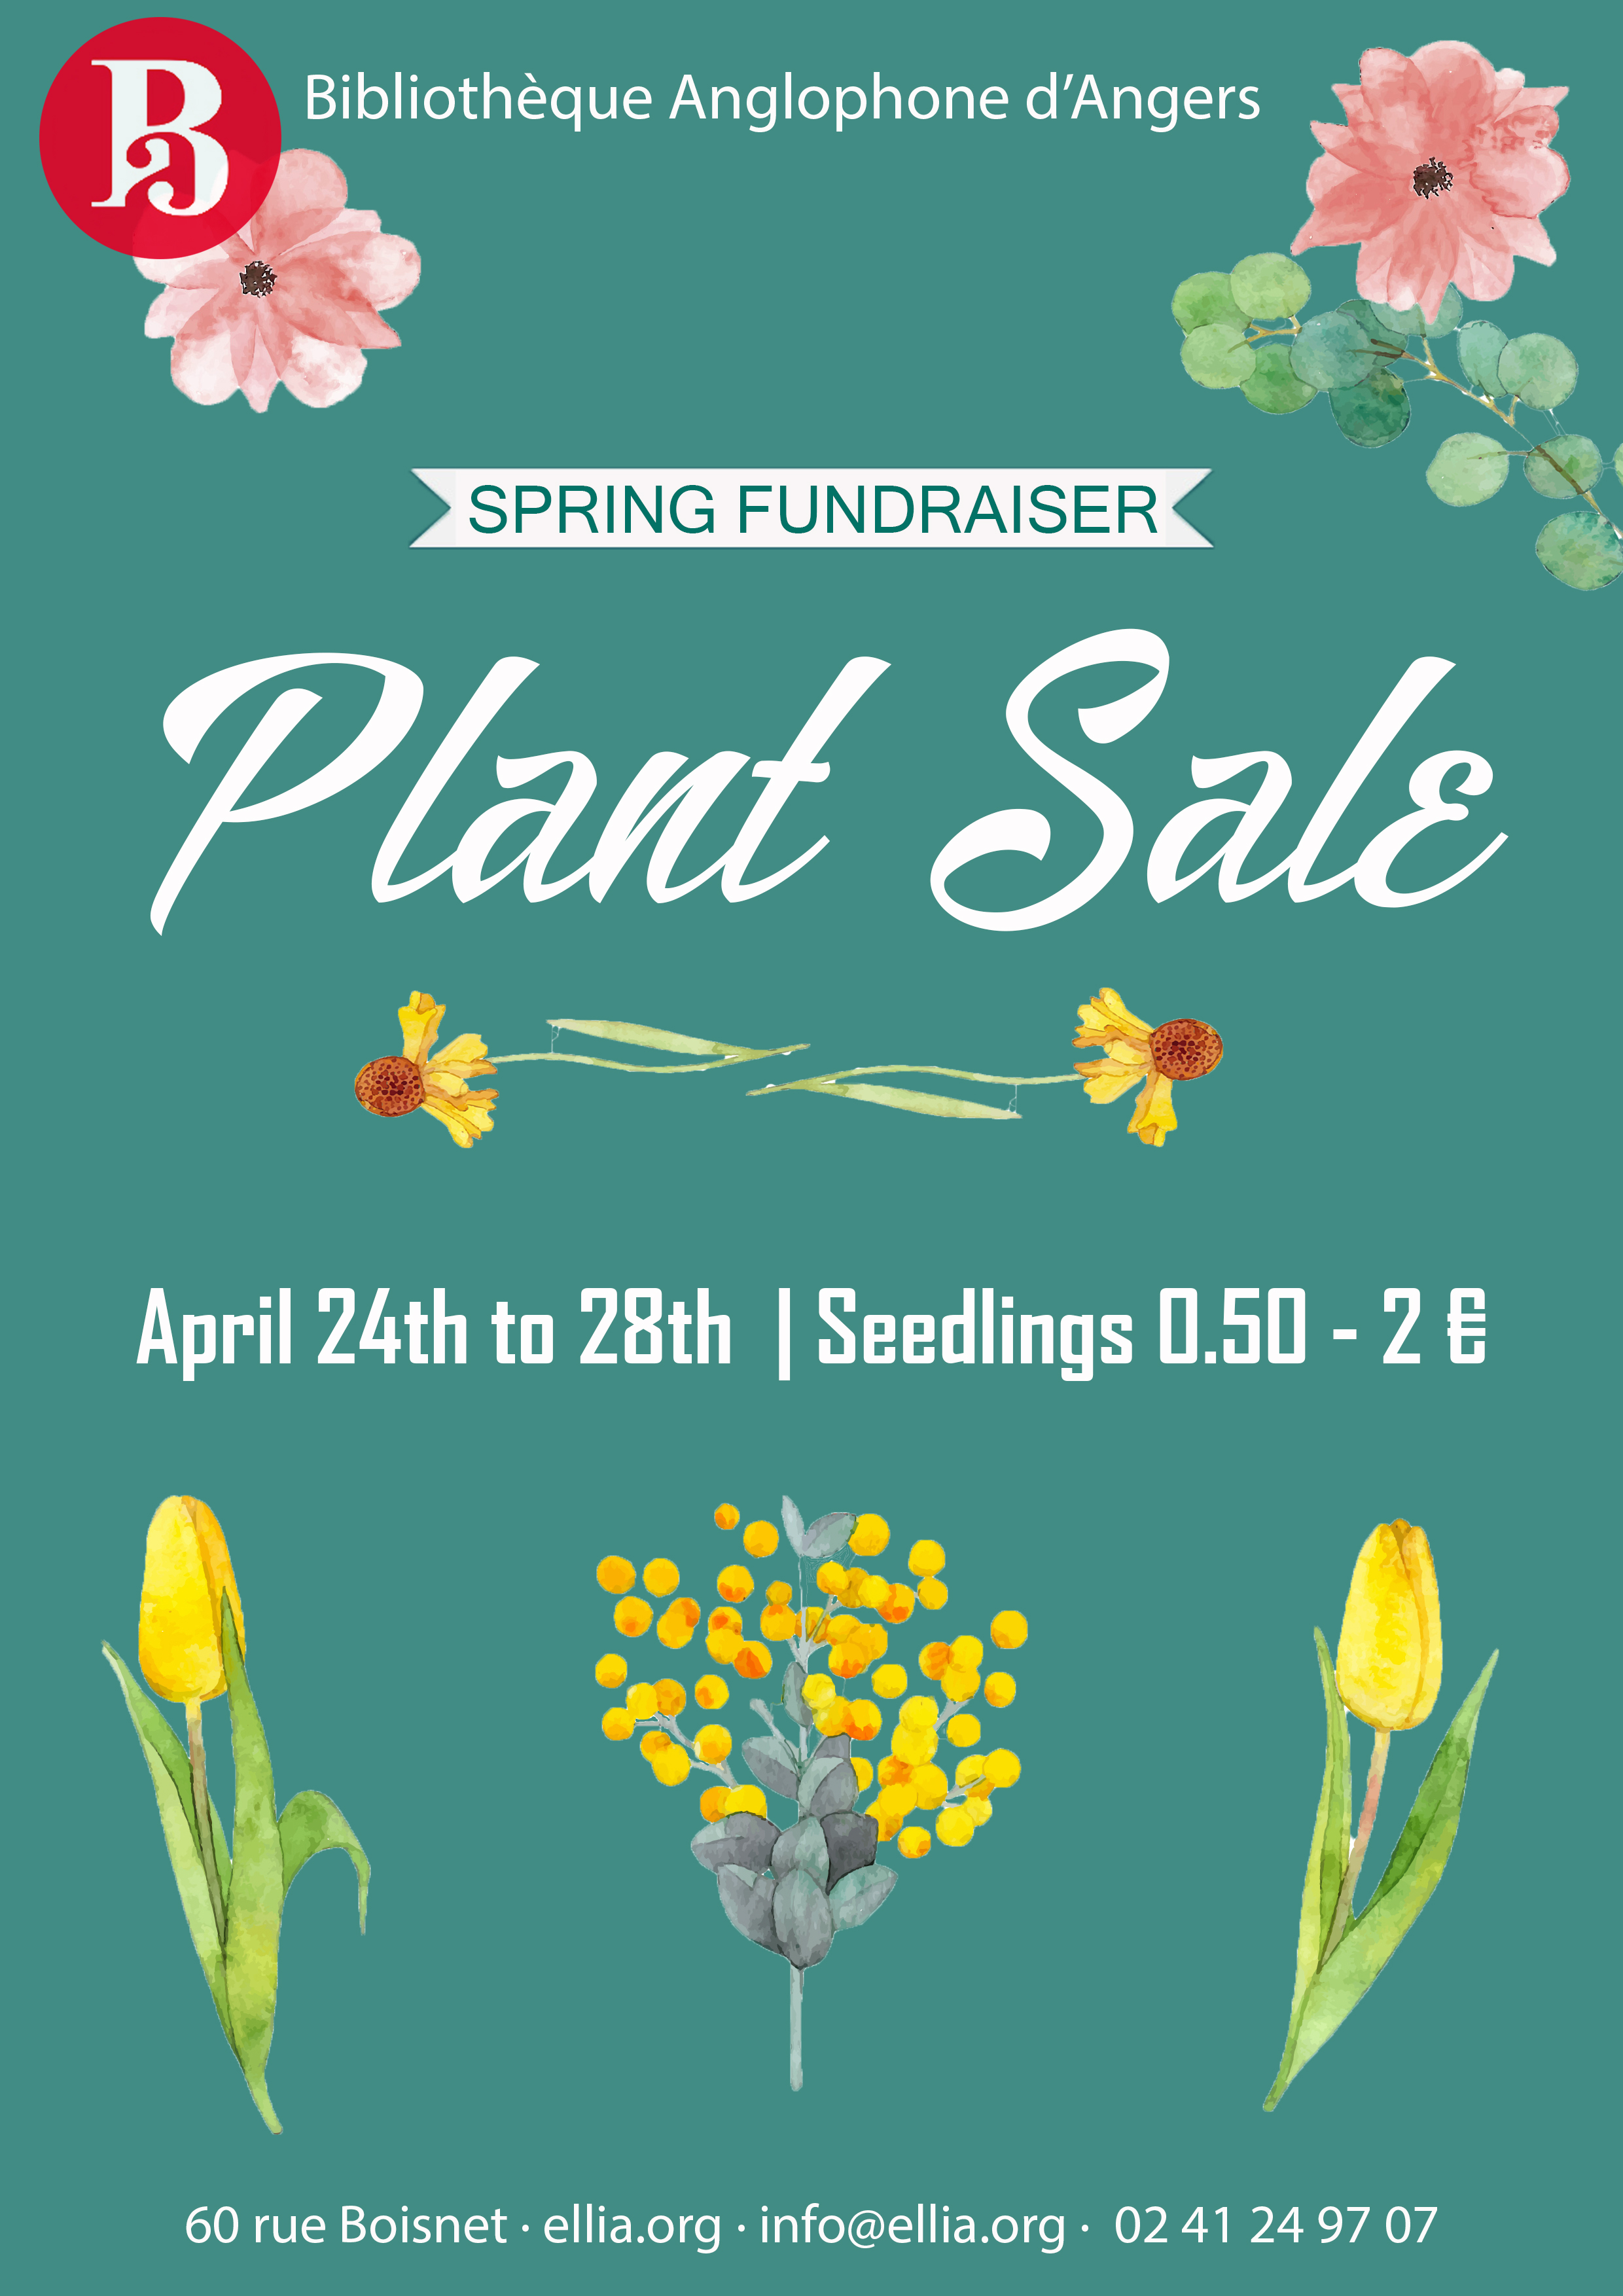 Plant sale